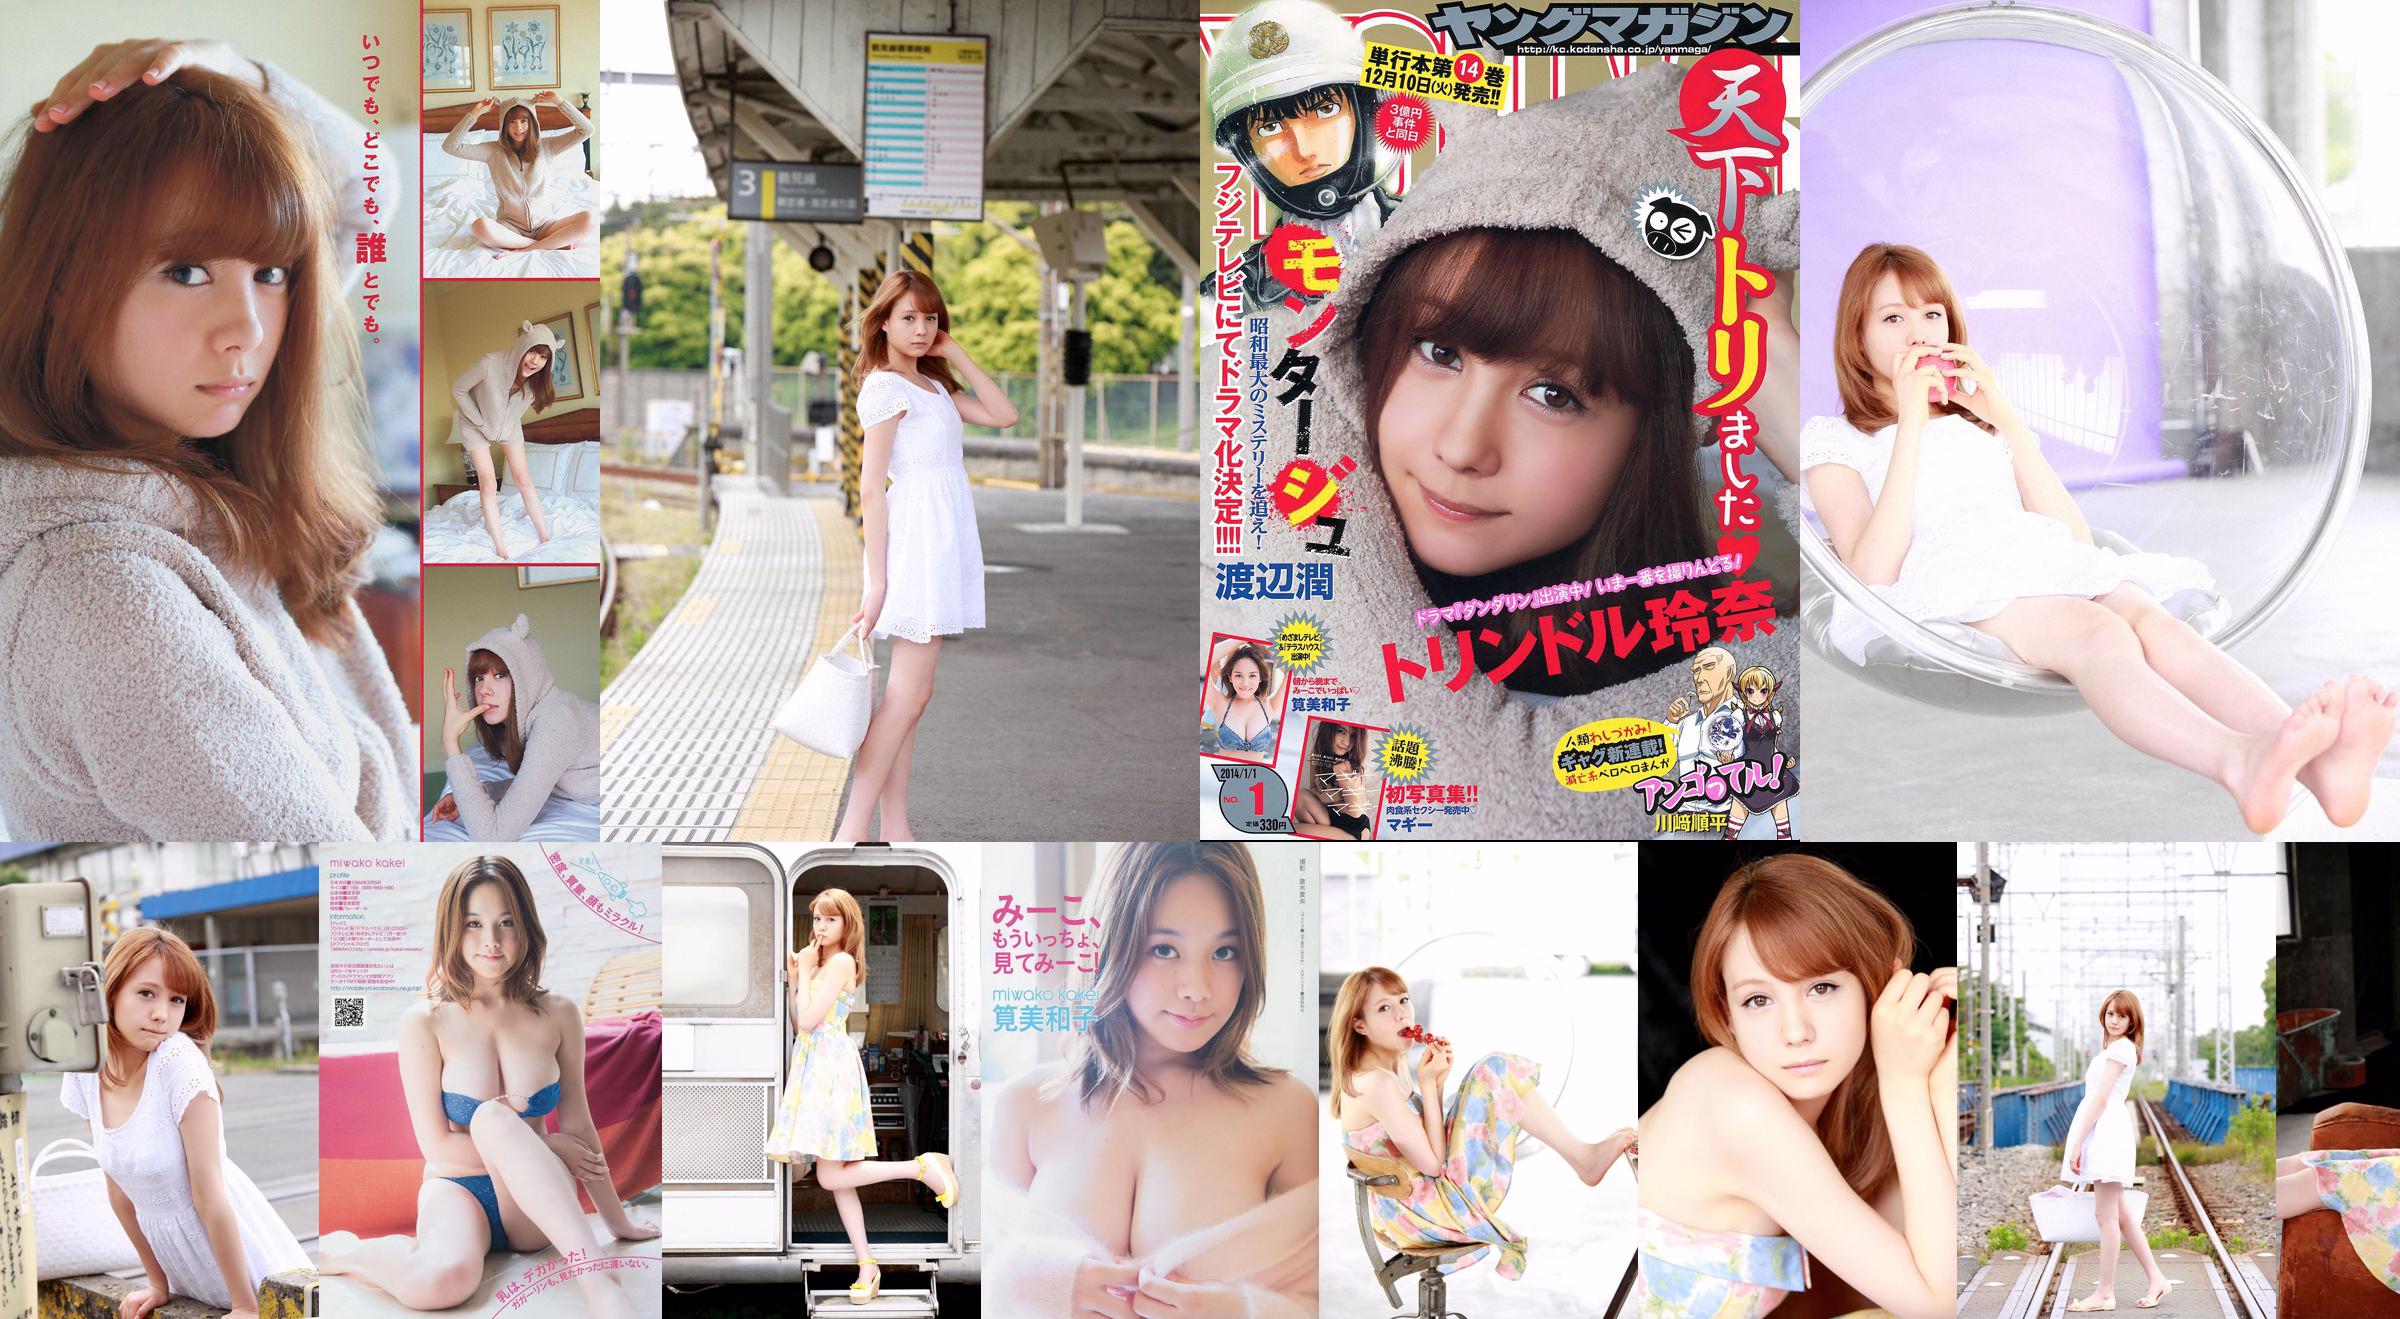 [Young Magazine] Reina Triendl Maggie Miwako Kakei 2014 nr 01 Zdjęcie No.4b827d Strona 2